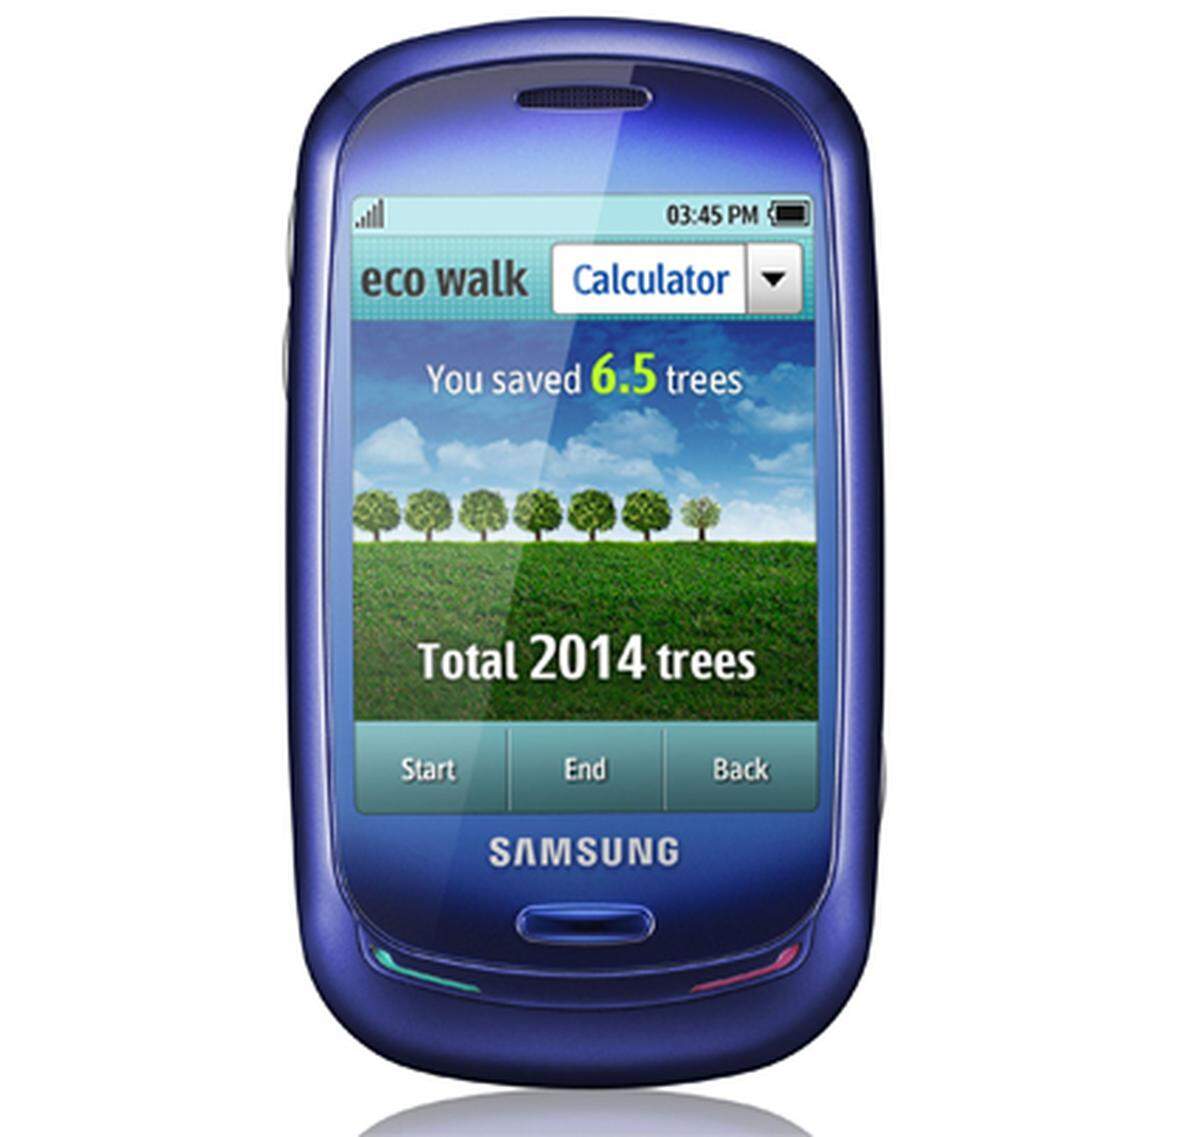 Samsung sorgt beim Telefonieren für ein reines Umwelt-Gewissen. Das "BueEarth" kann (notfalls) über integrierte Solarzellen mit Sonnenenergie versorgt werden, besteht aus recycletem Plastik und berechnet über einen Schrittzähler, wieviel CO2 man im Vergleich zum Autofahren gespart hat. Rund 330 Euro